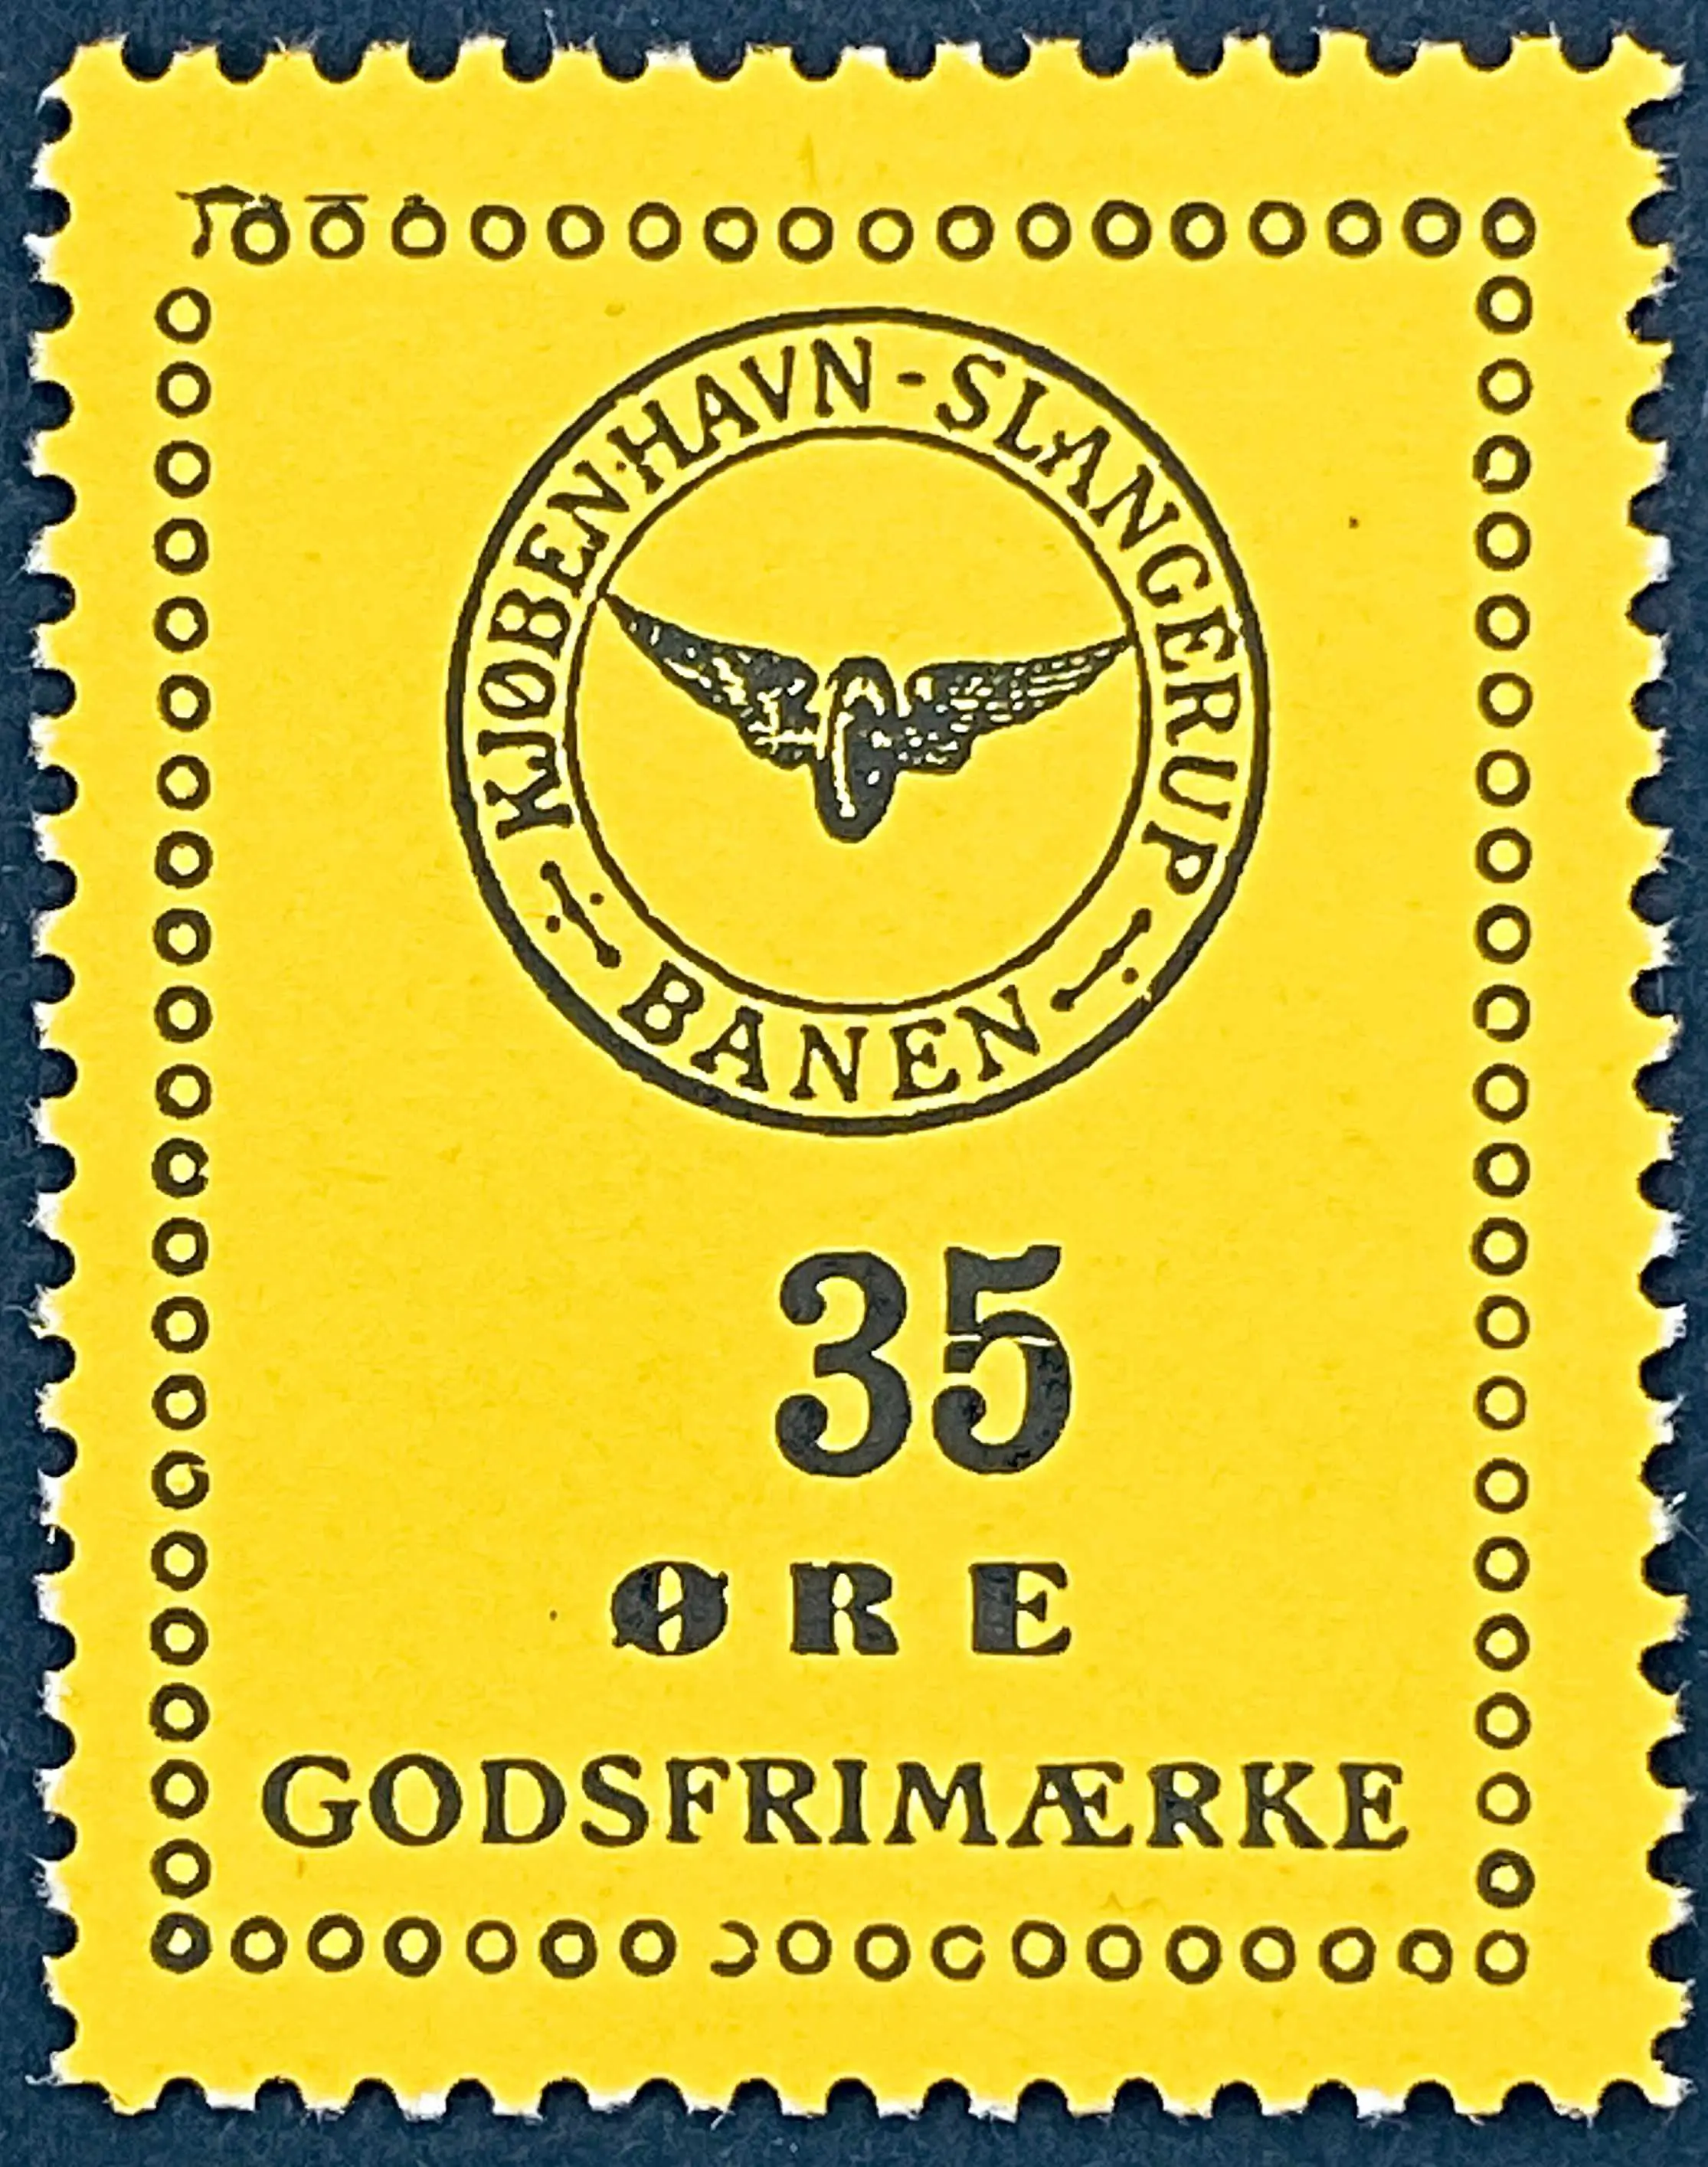 KSB 28 - 35 Øre - Sort tekst på mørkegult papir.